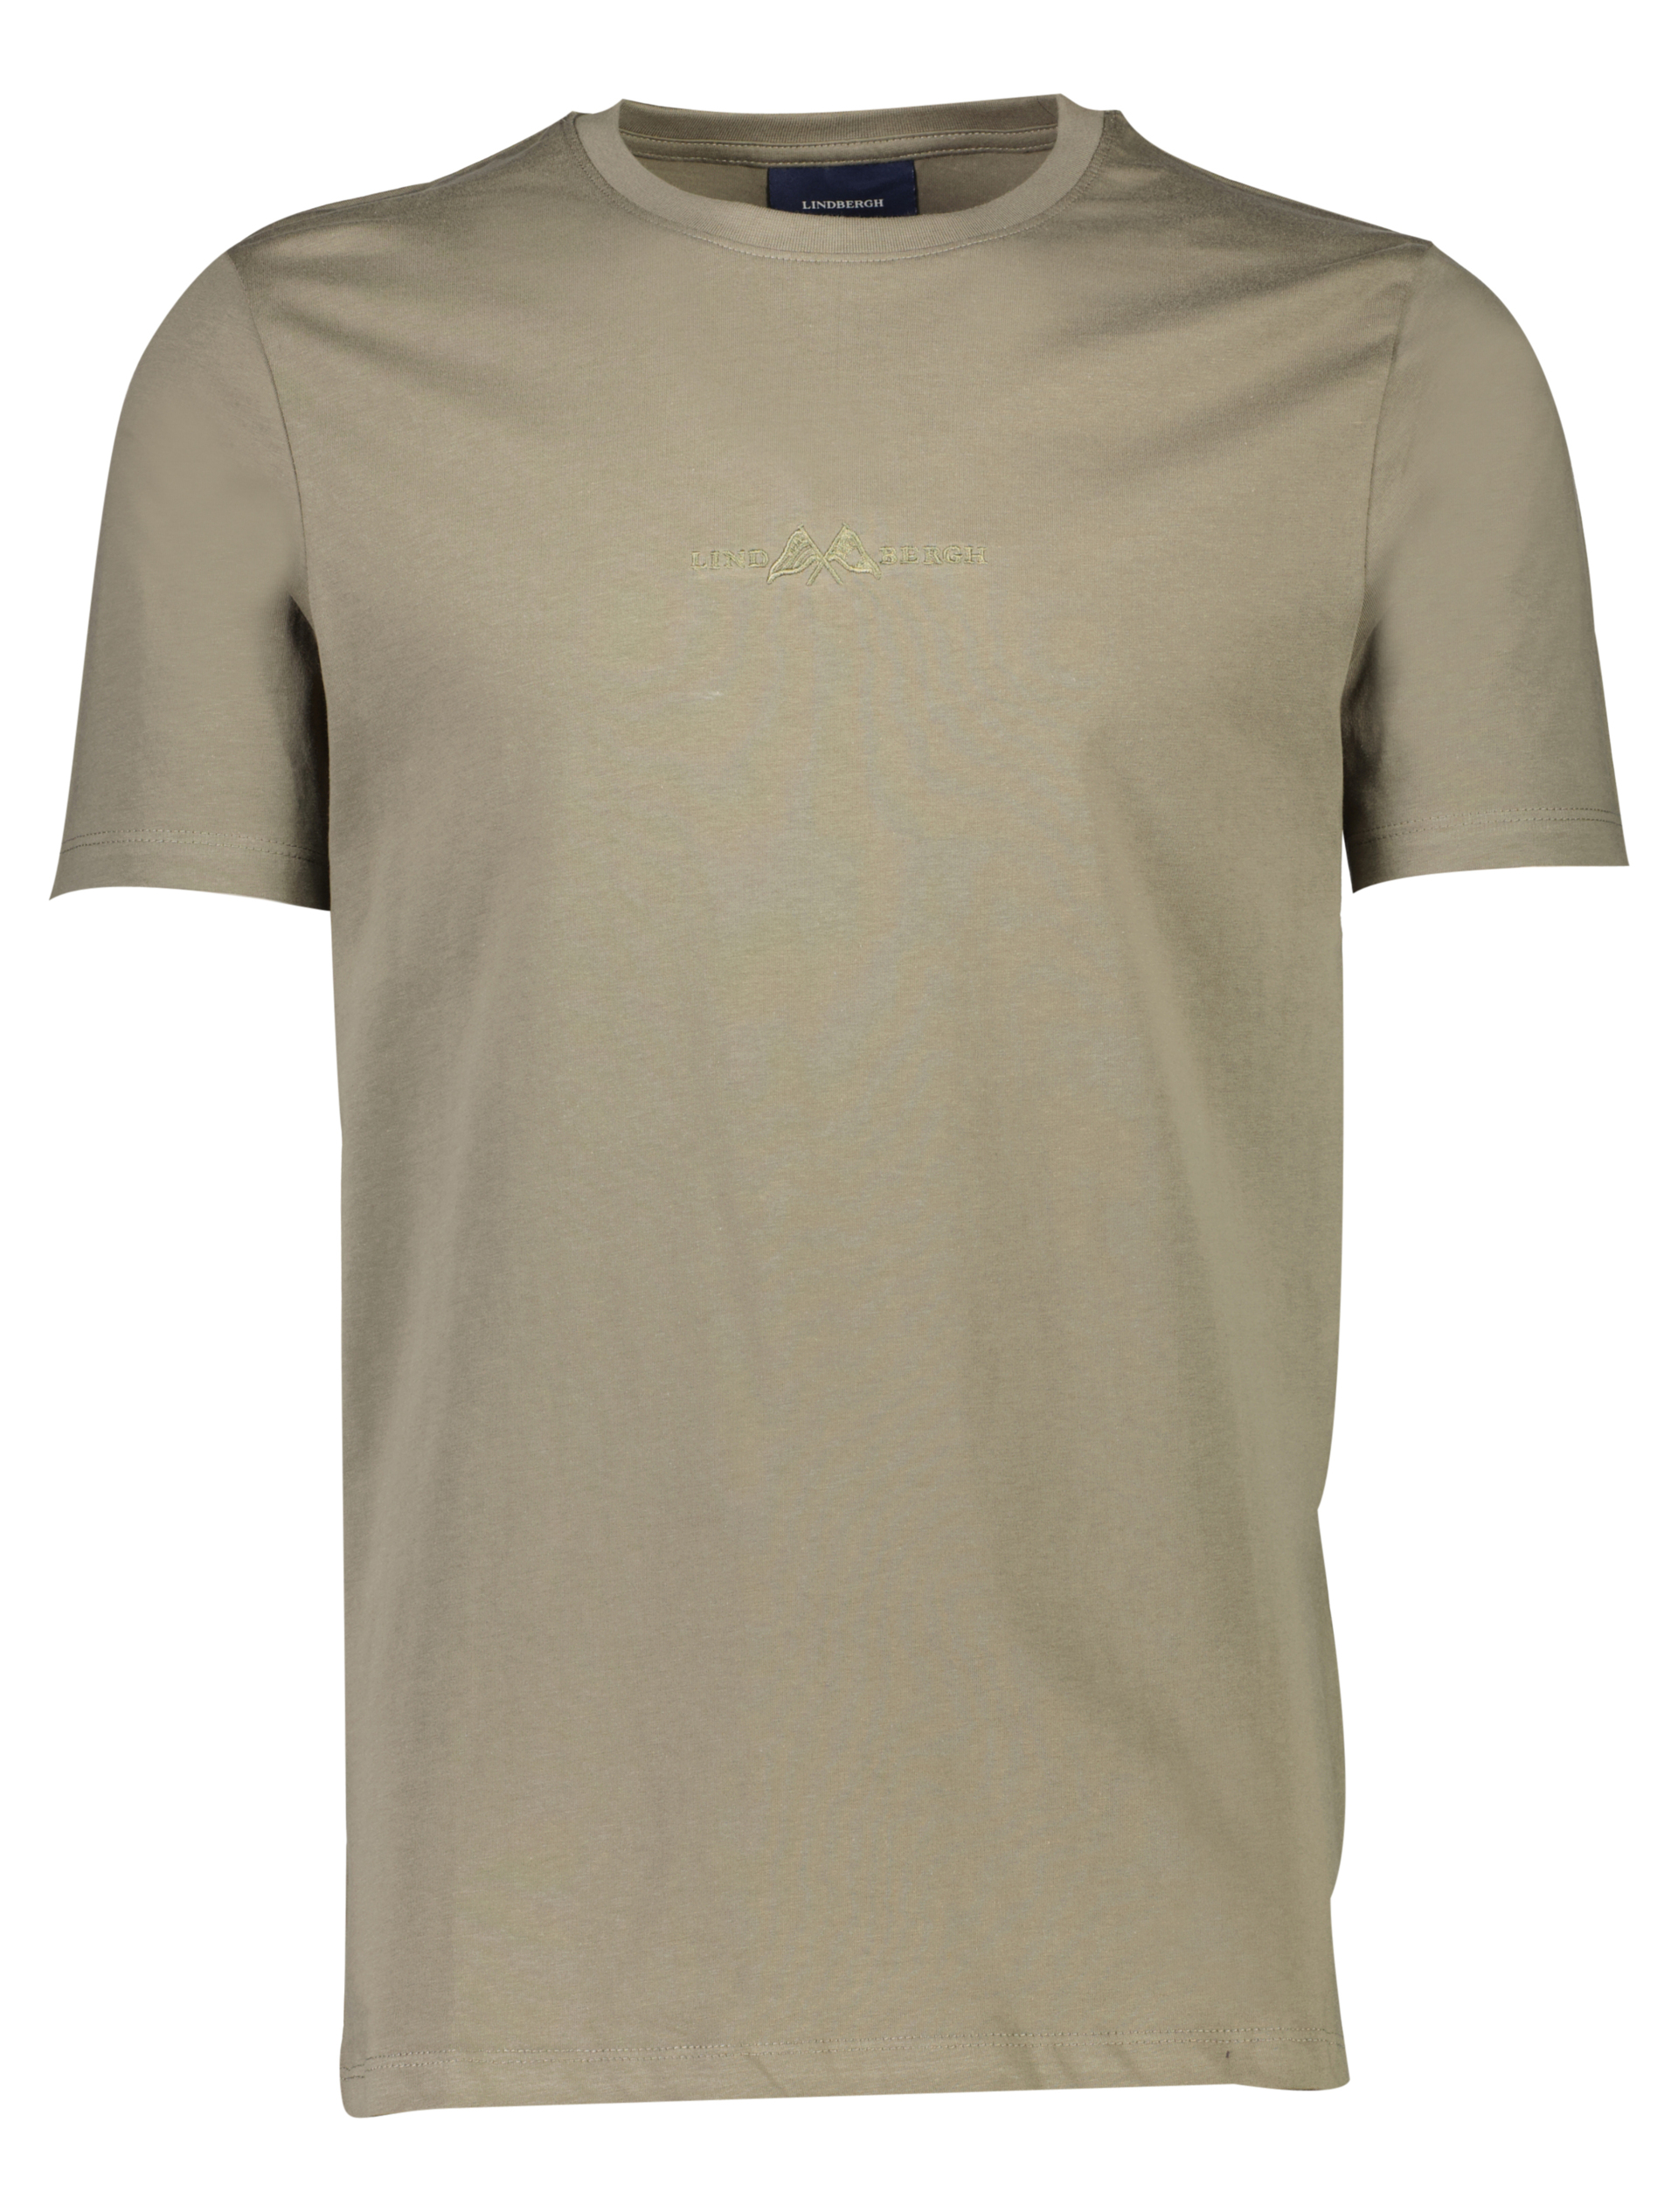 Lindbergh T-shirt grön / lt dusty army